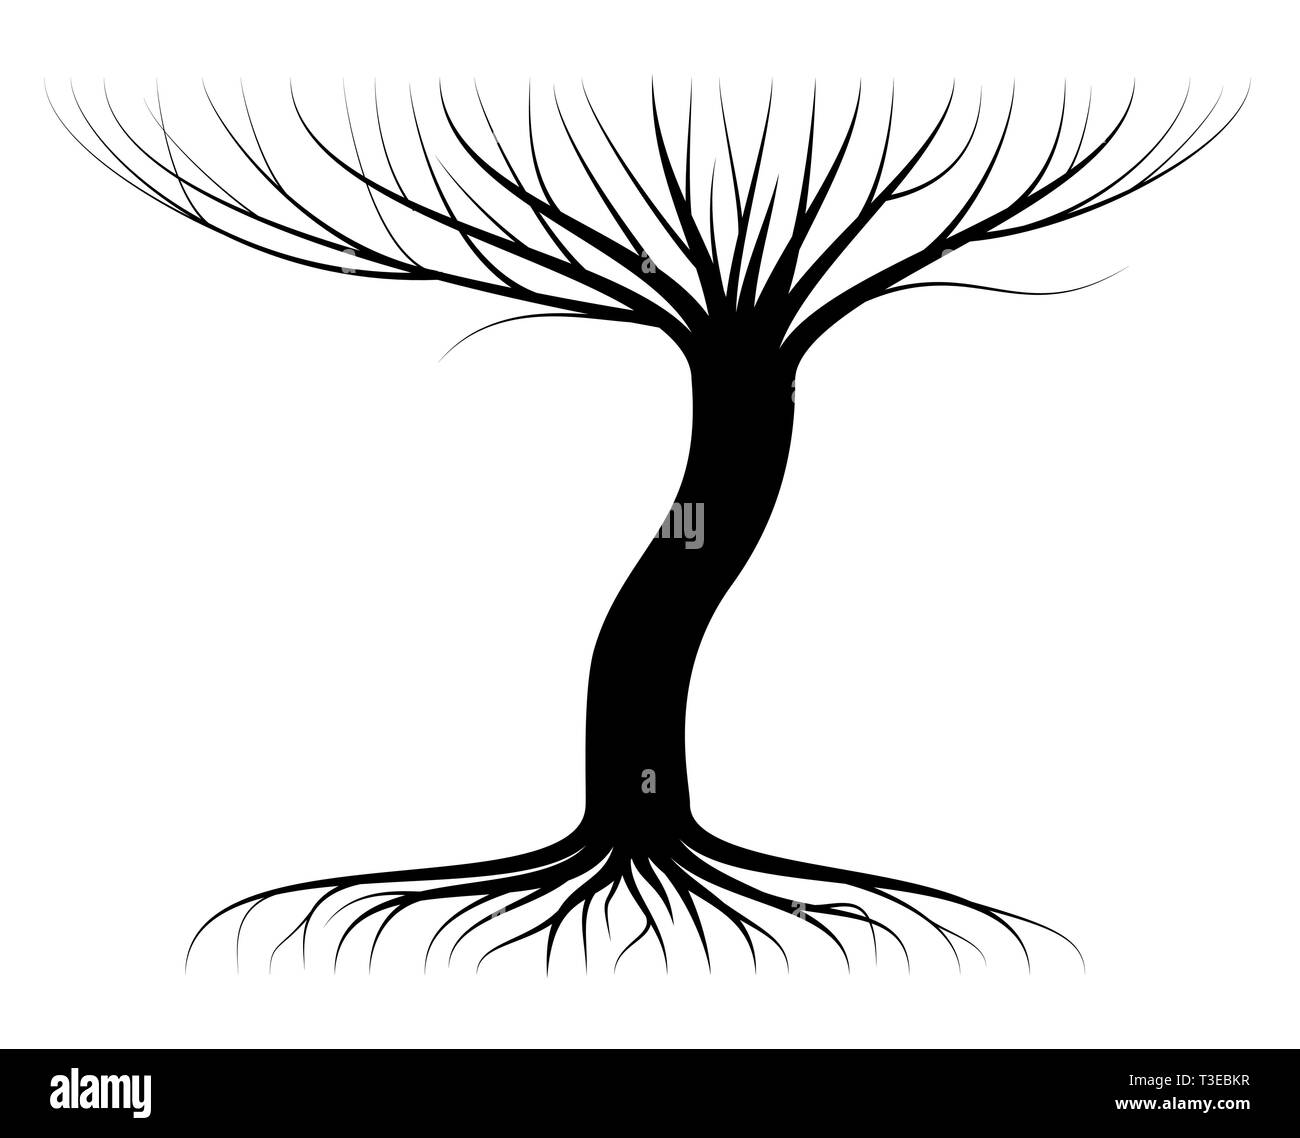 Contour noir d'un arbre avec des branches et racines. La couronne de feuilles et no Logo ou emblème. Illustration de Vecteur